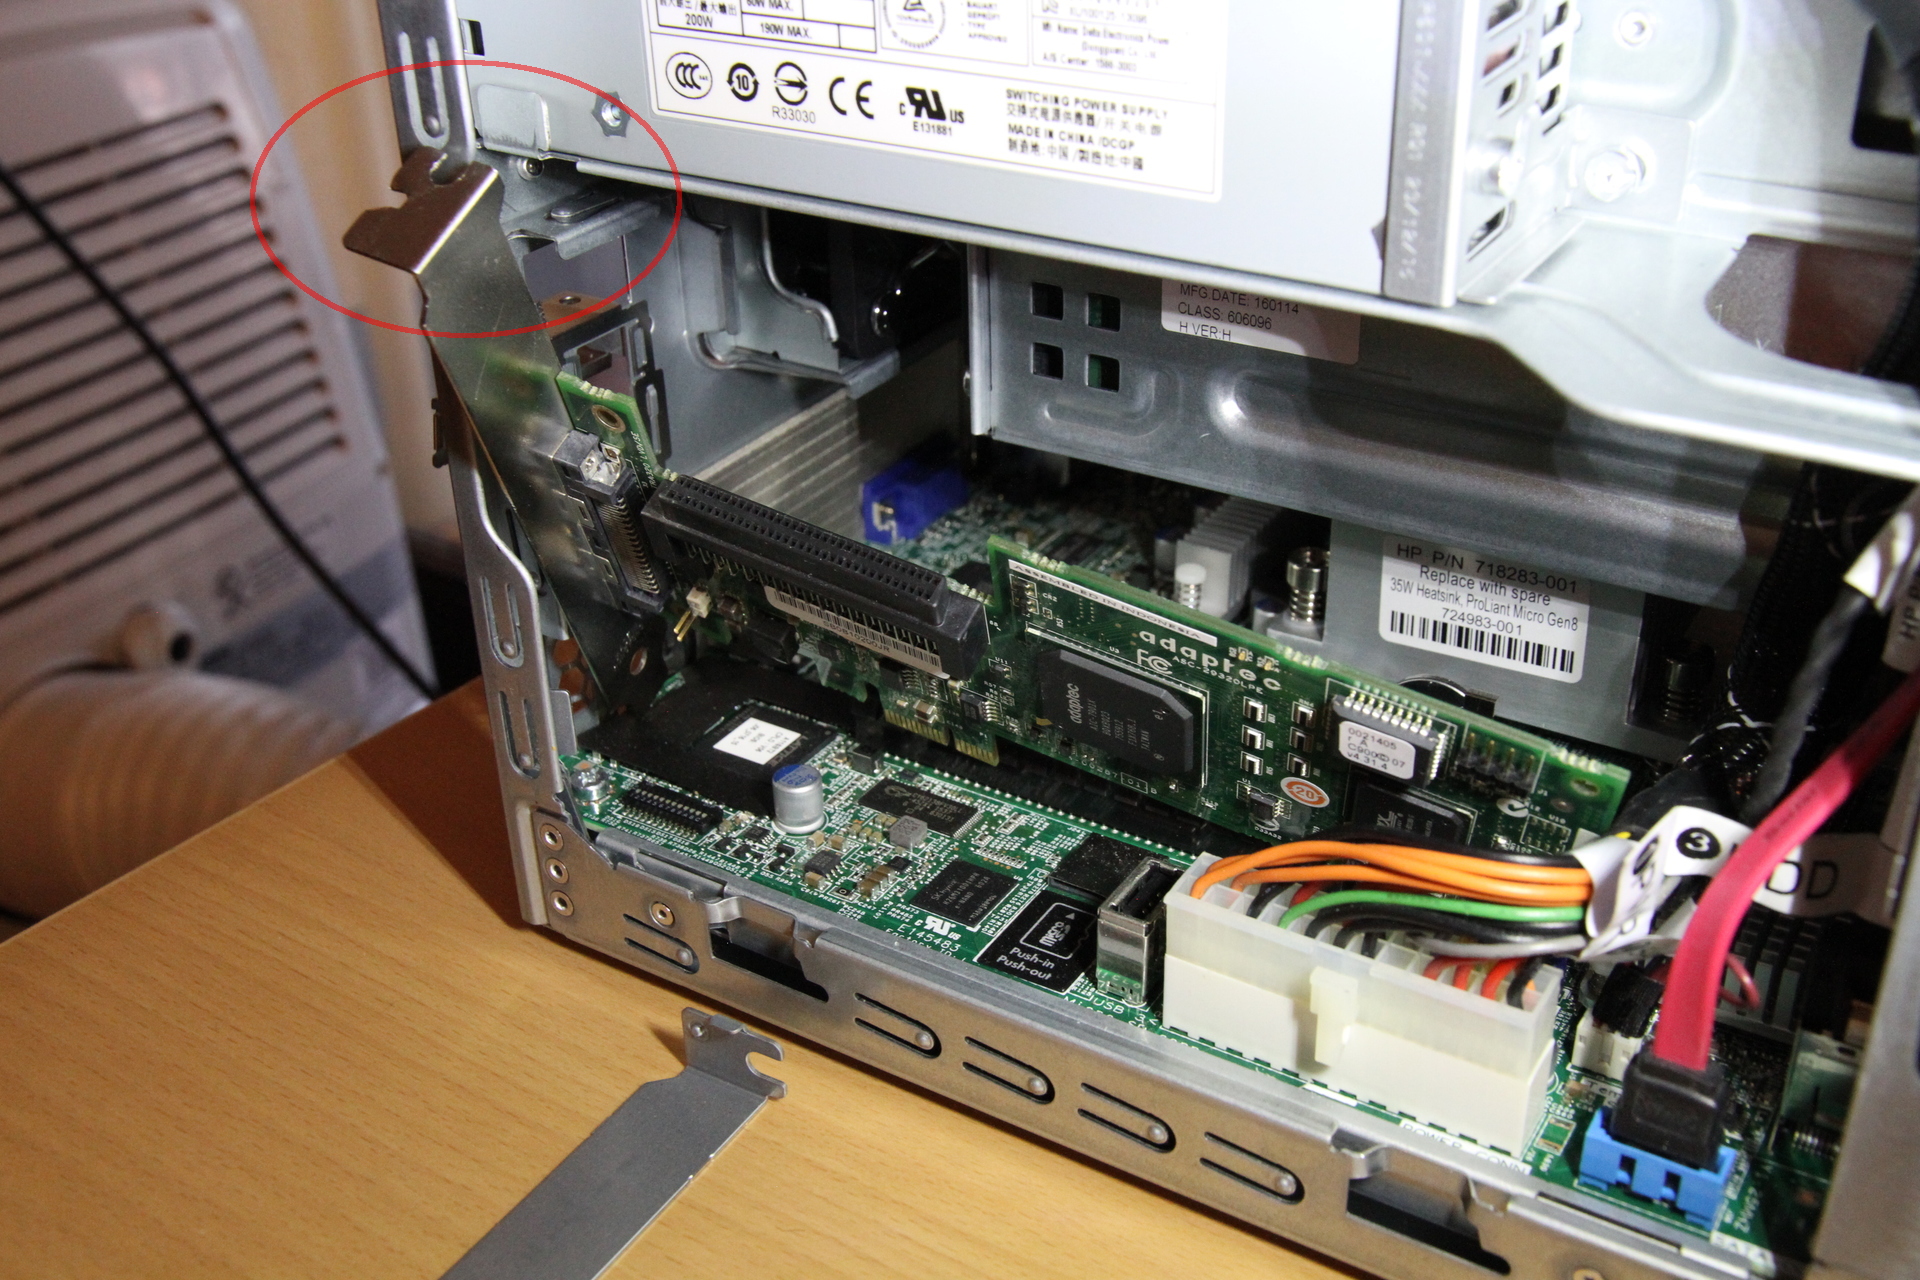 SCSI-Karte passt nicht, weil sie oben am Netzteil anstößt -.-